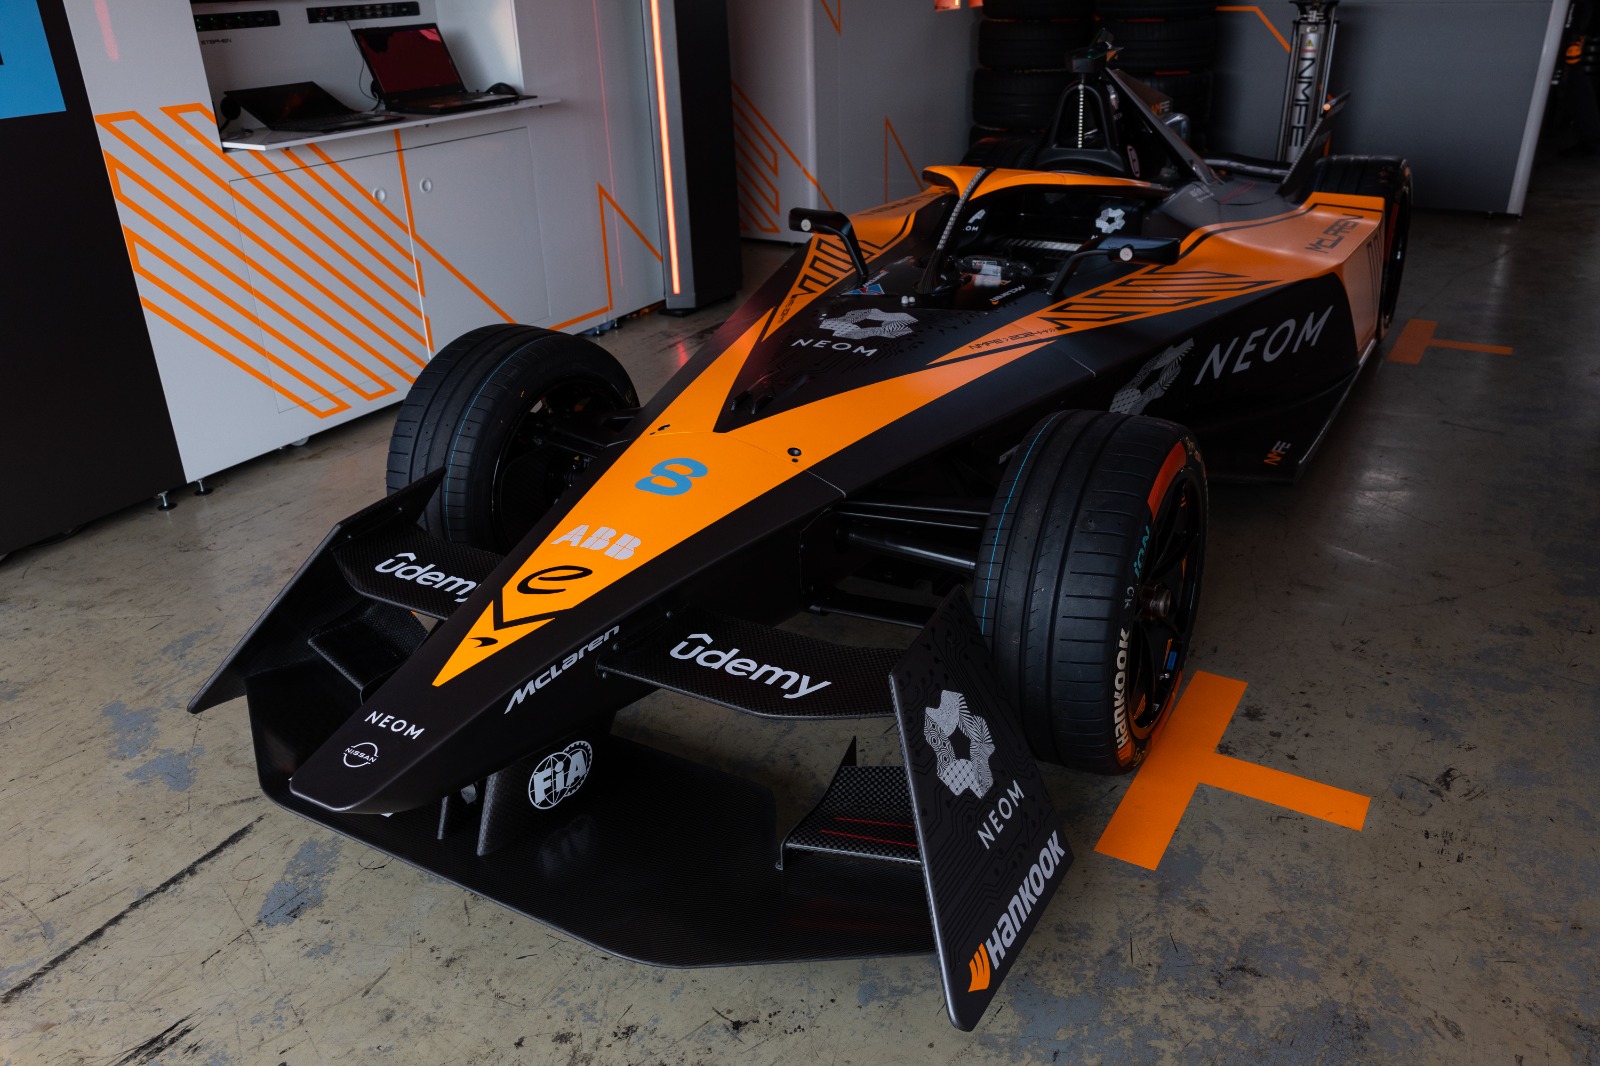 Udemy’s Groundbreaking Partnership with McLaren Racing